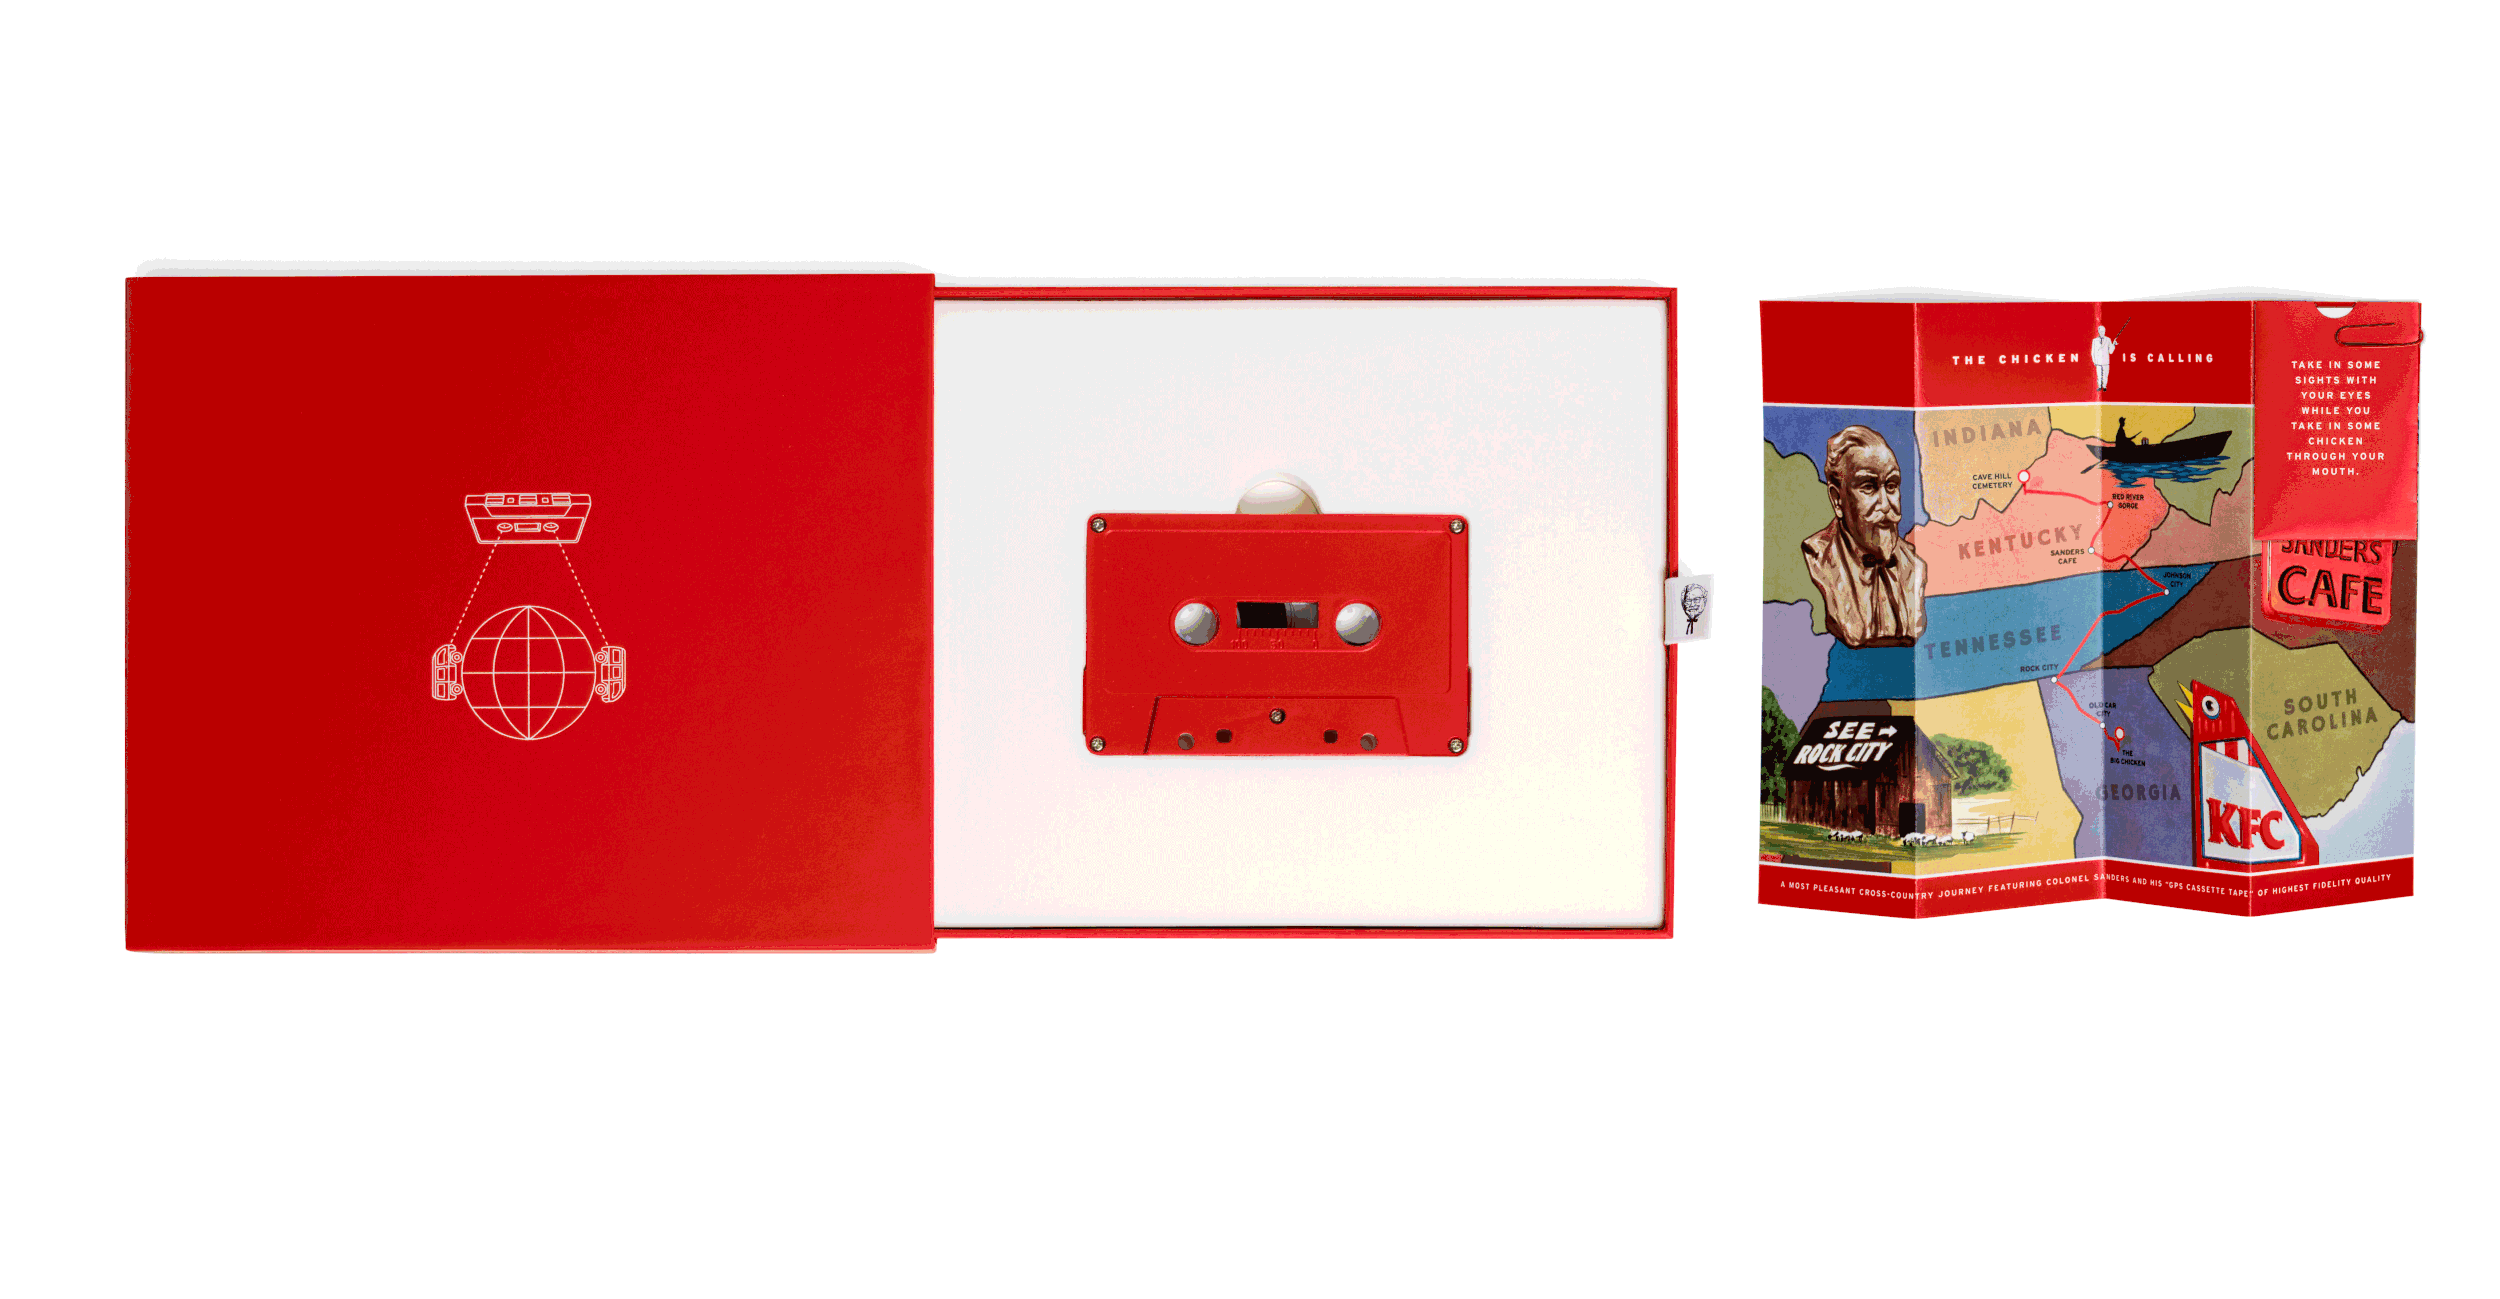   KFC GPS Cassette tape  | Wieden + Kennedy (Portland) | 2017   http://www.wk.com/campaign/gps_cassette_tapes  